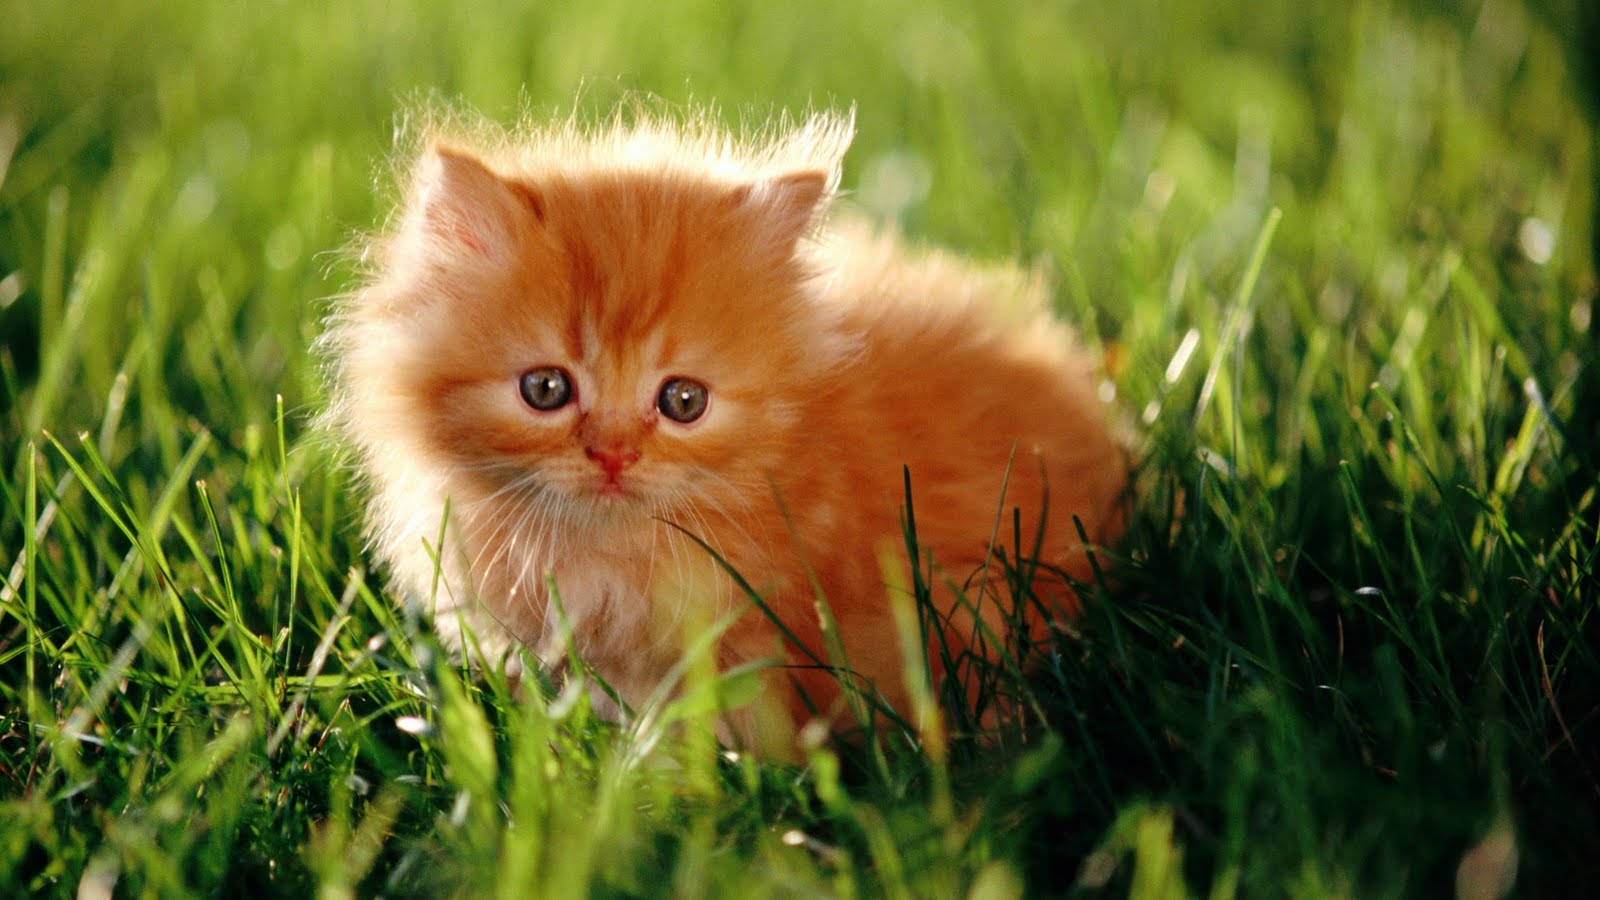 Beautiful Cat In Grass Field